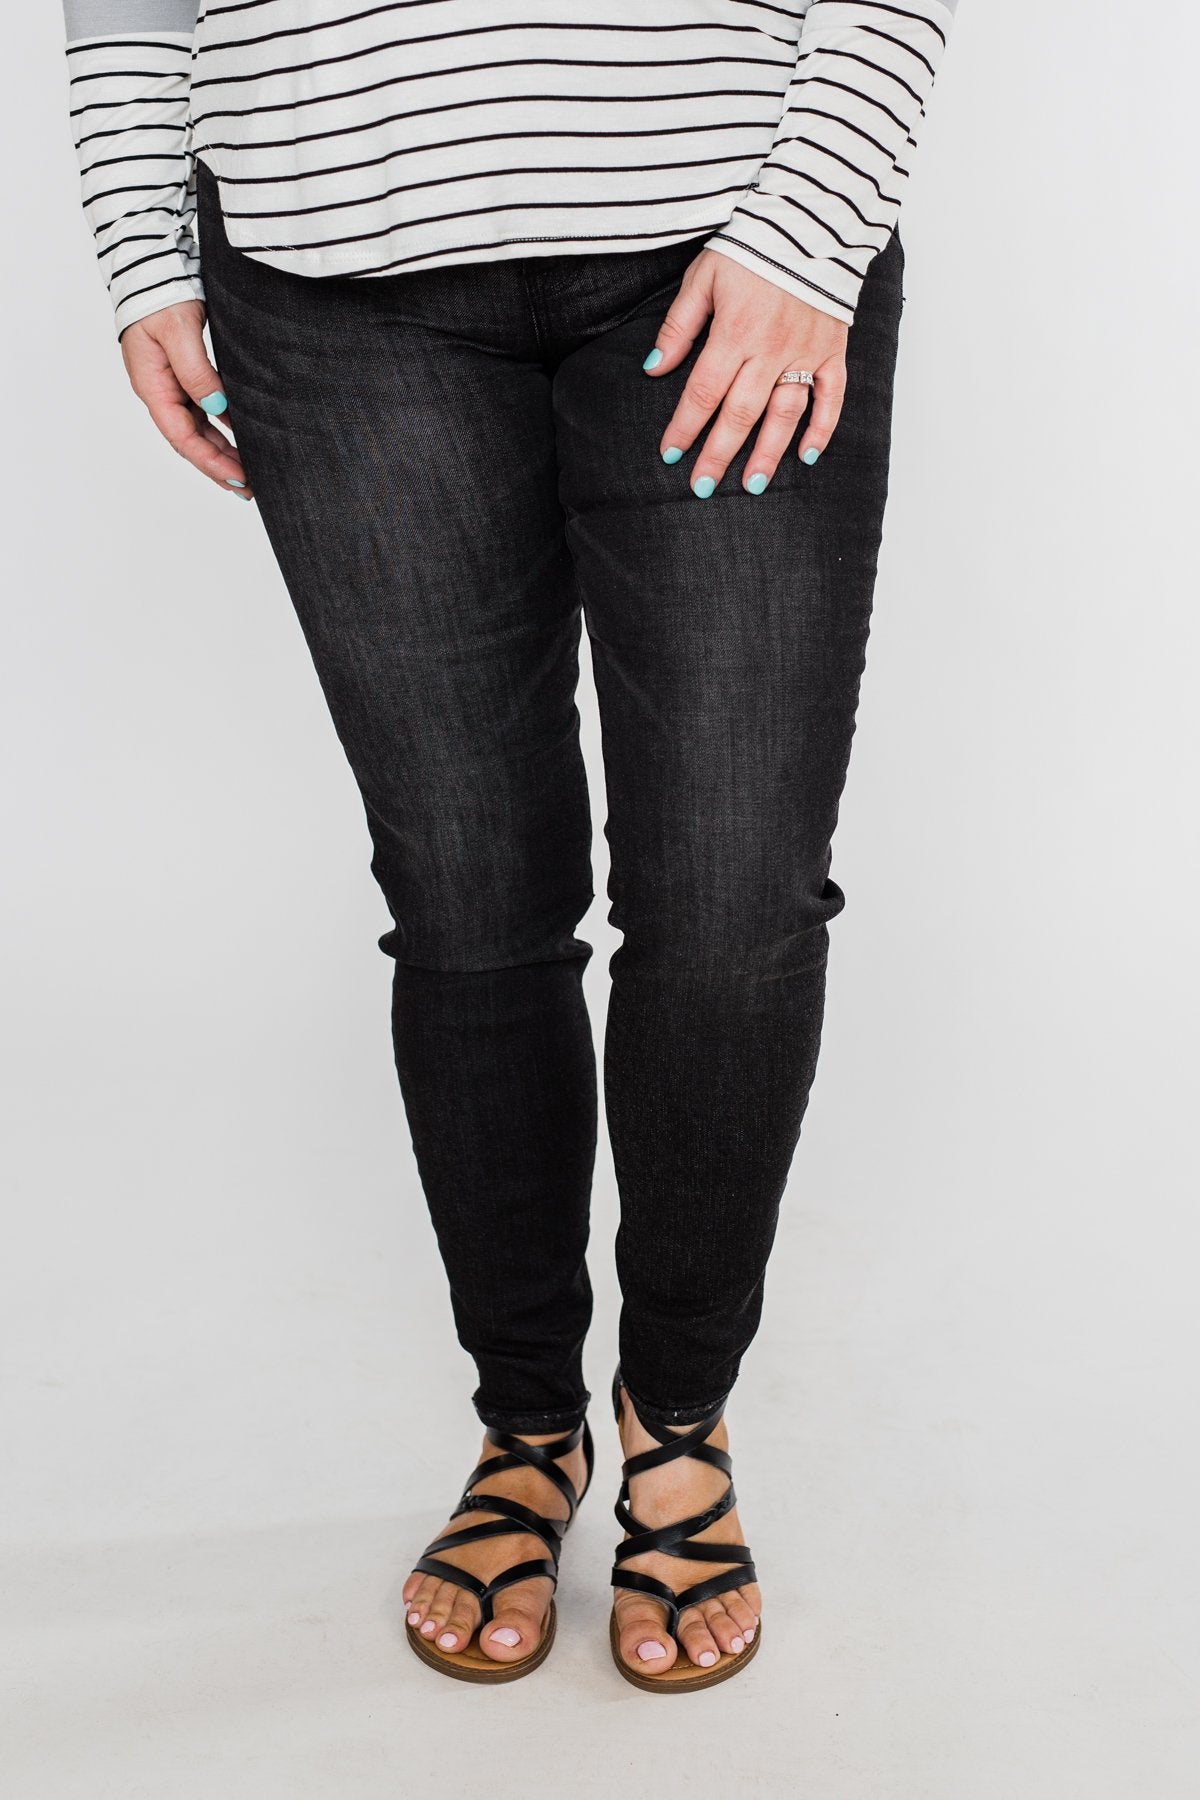 Sneak Peek Vintage Black Jeans- Josie Wash